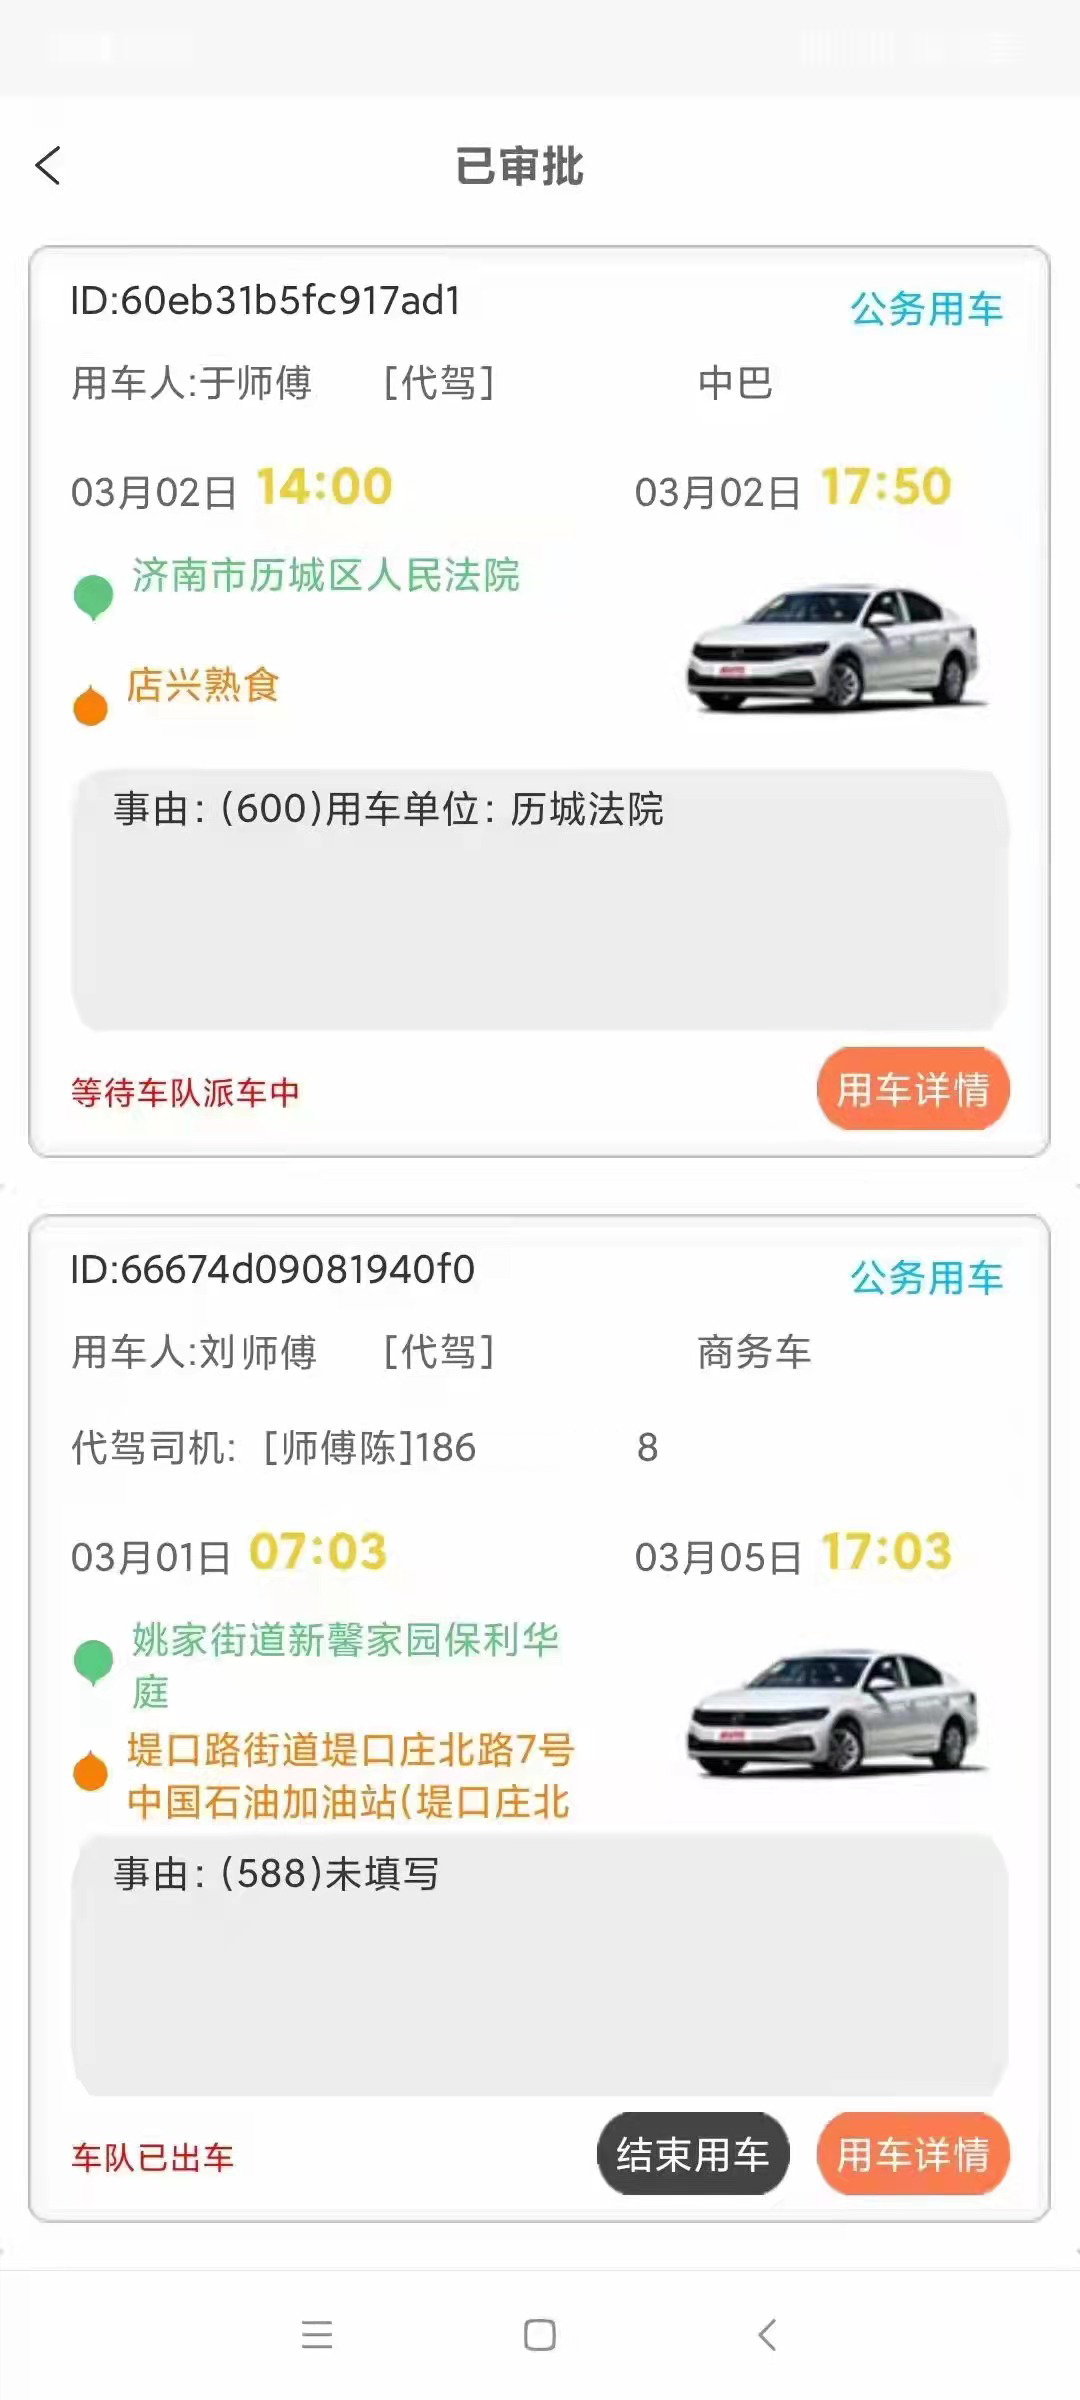 西安出租车电召公众号系统源码单位用车申请小程序